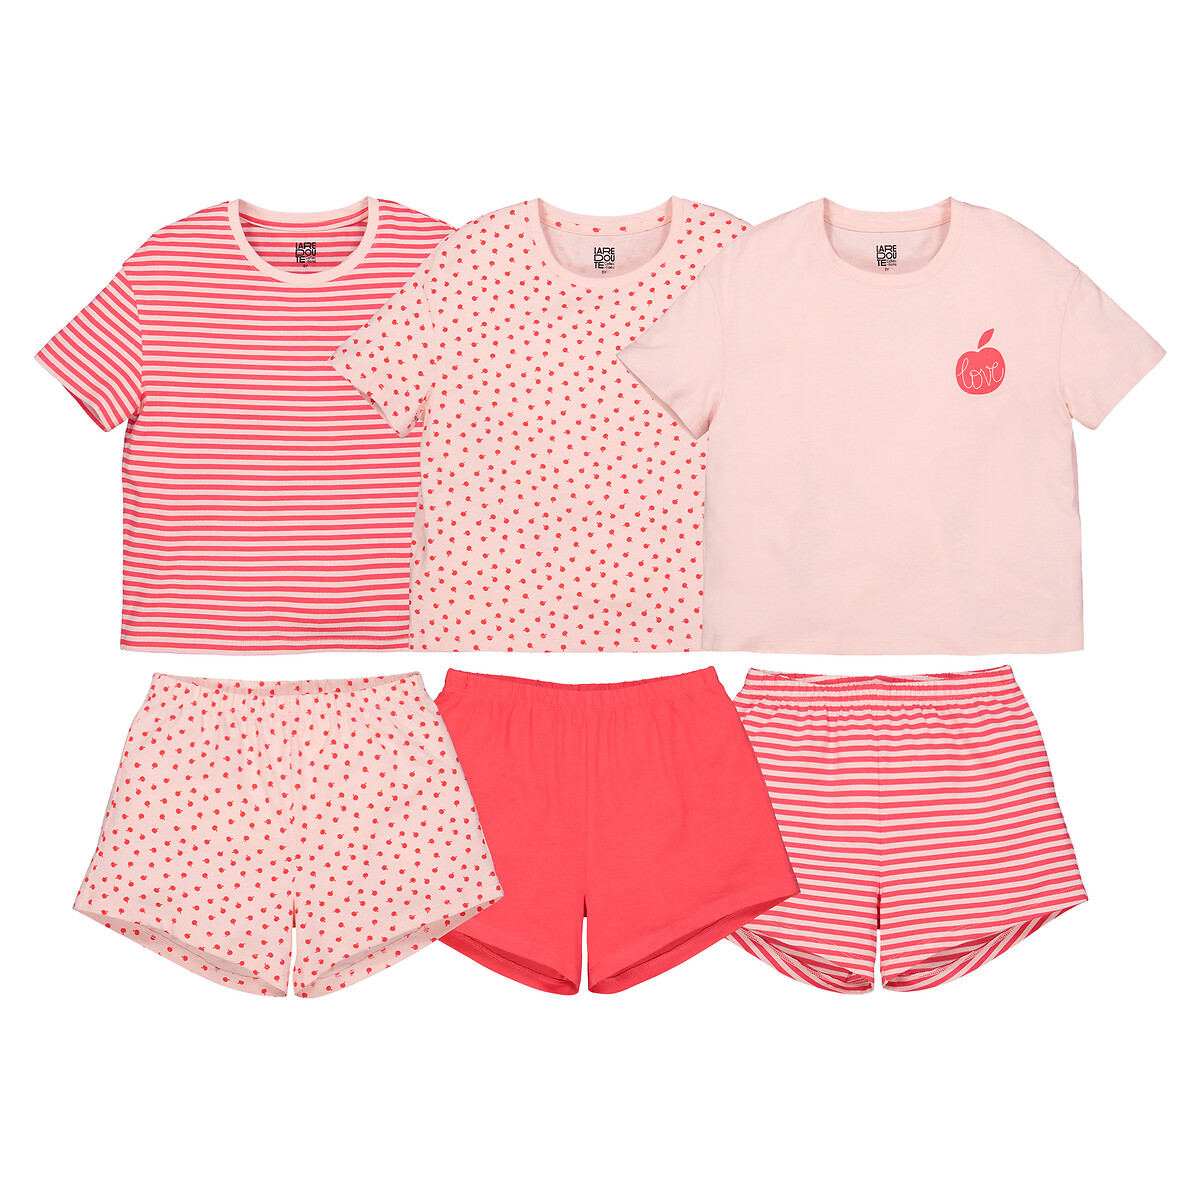 Комплект из трех пижам La Redoute 4 года - 102 см розовый комплект из трех футболок la redoute 3 года 94 см синий